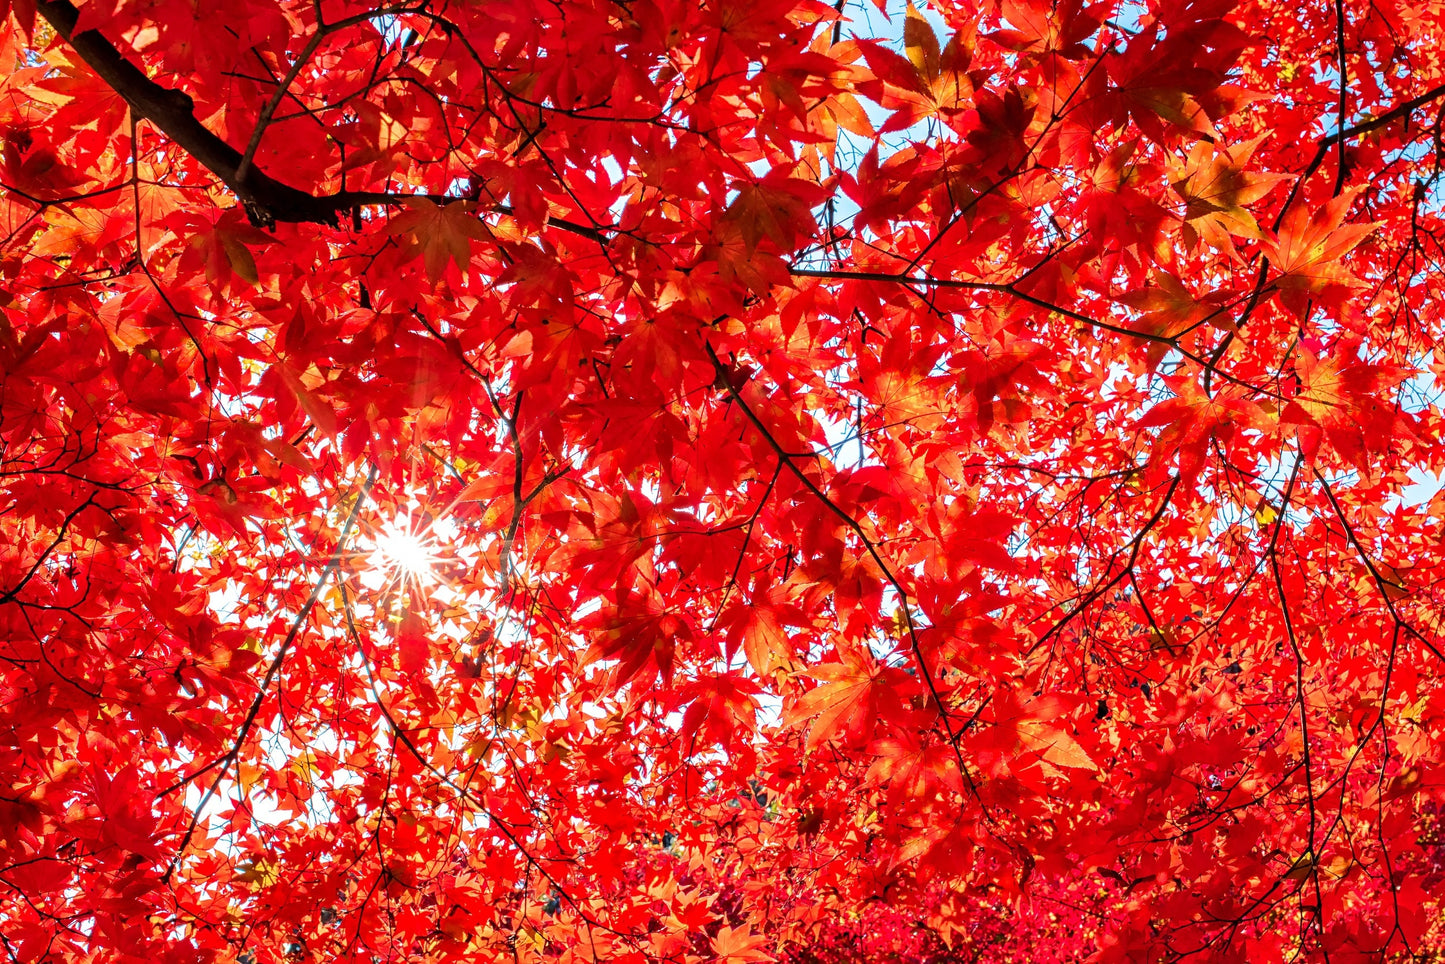 10 RED JAPANESE MAPLE Tree Ornamental Acer Palmatum Seeds